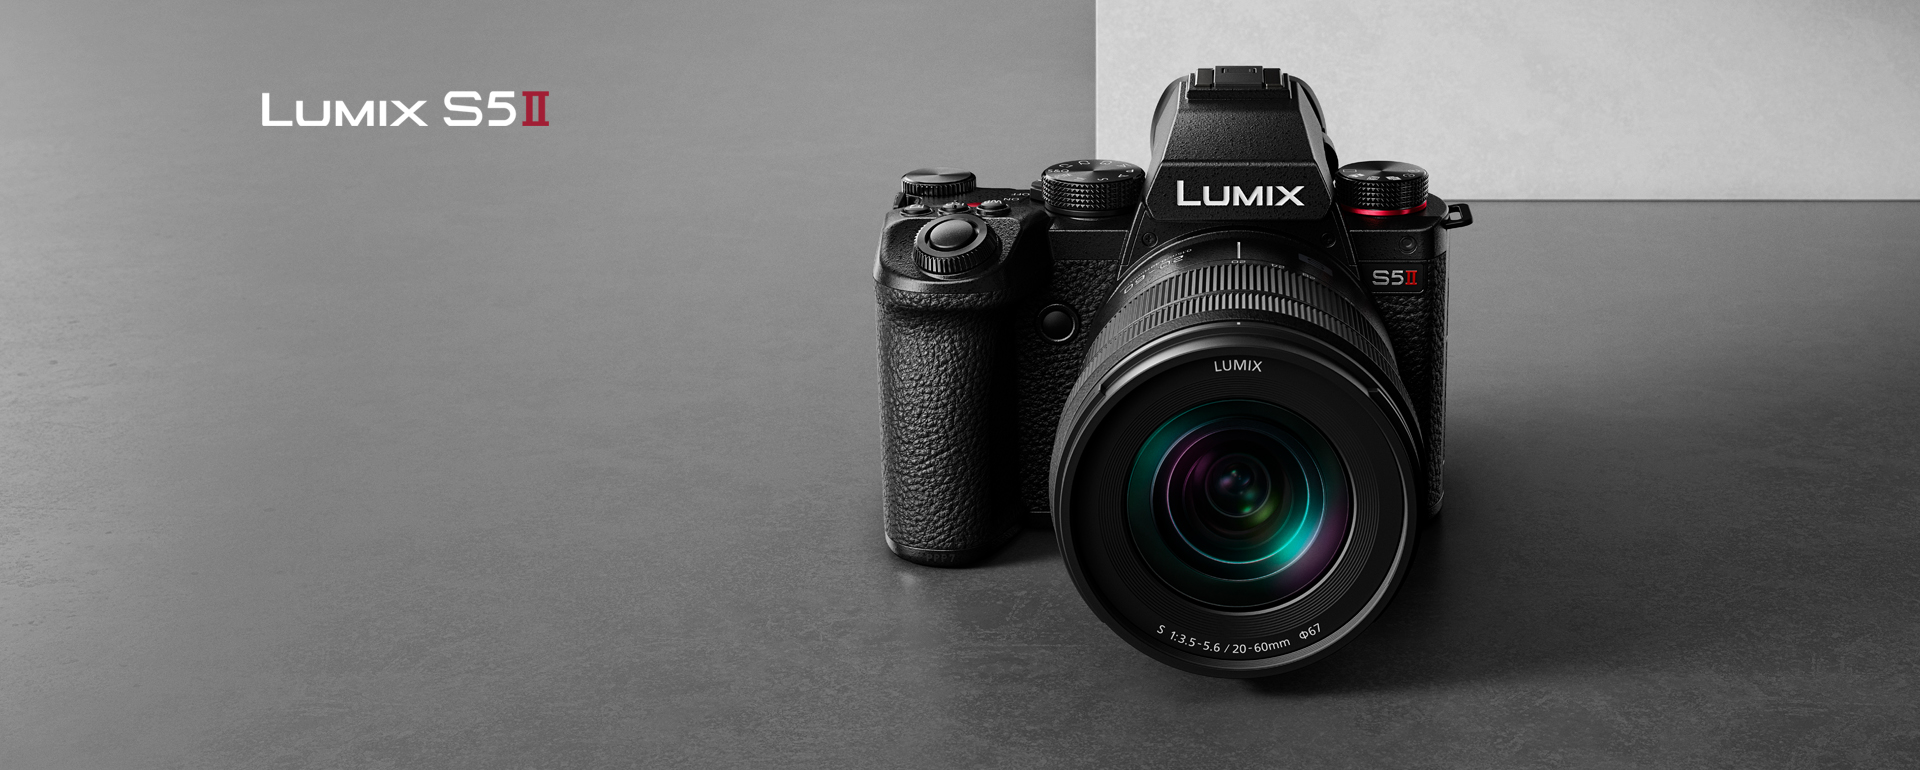 Zamerajte sa na to, čo je dôležité, s novým fotoaparátom LUMIX S5MII